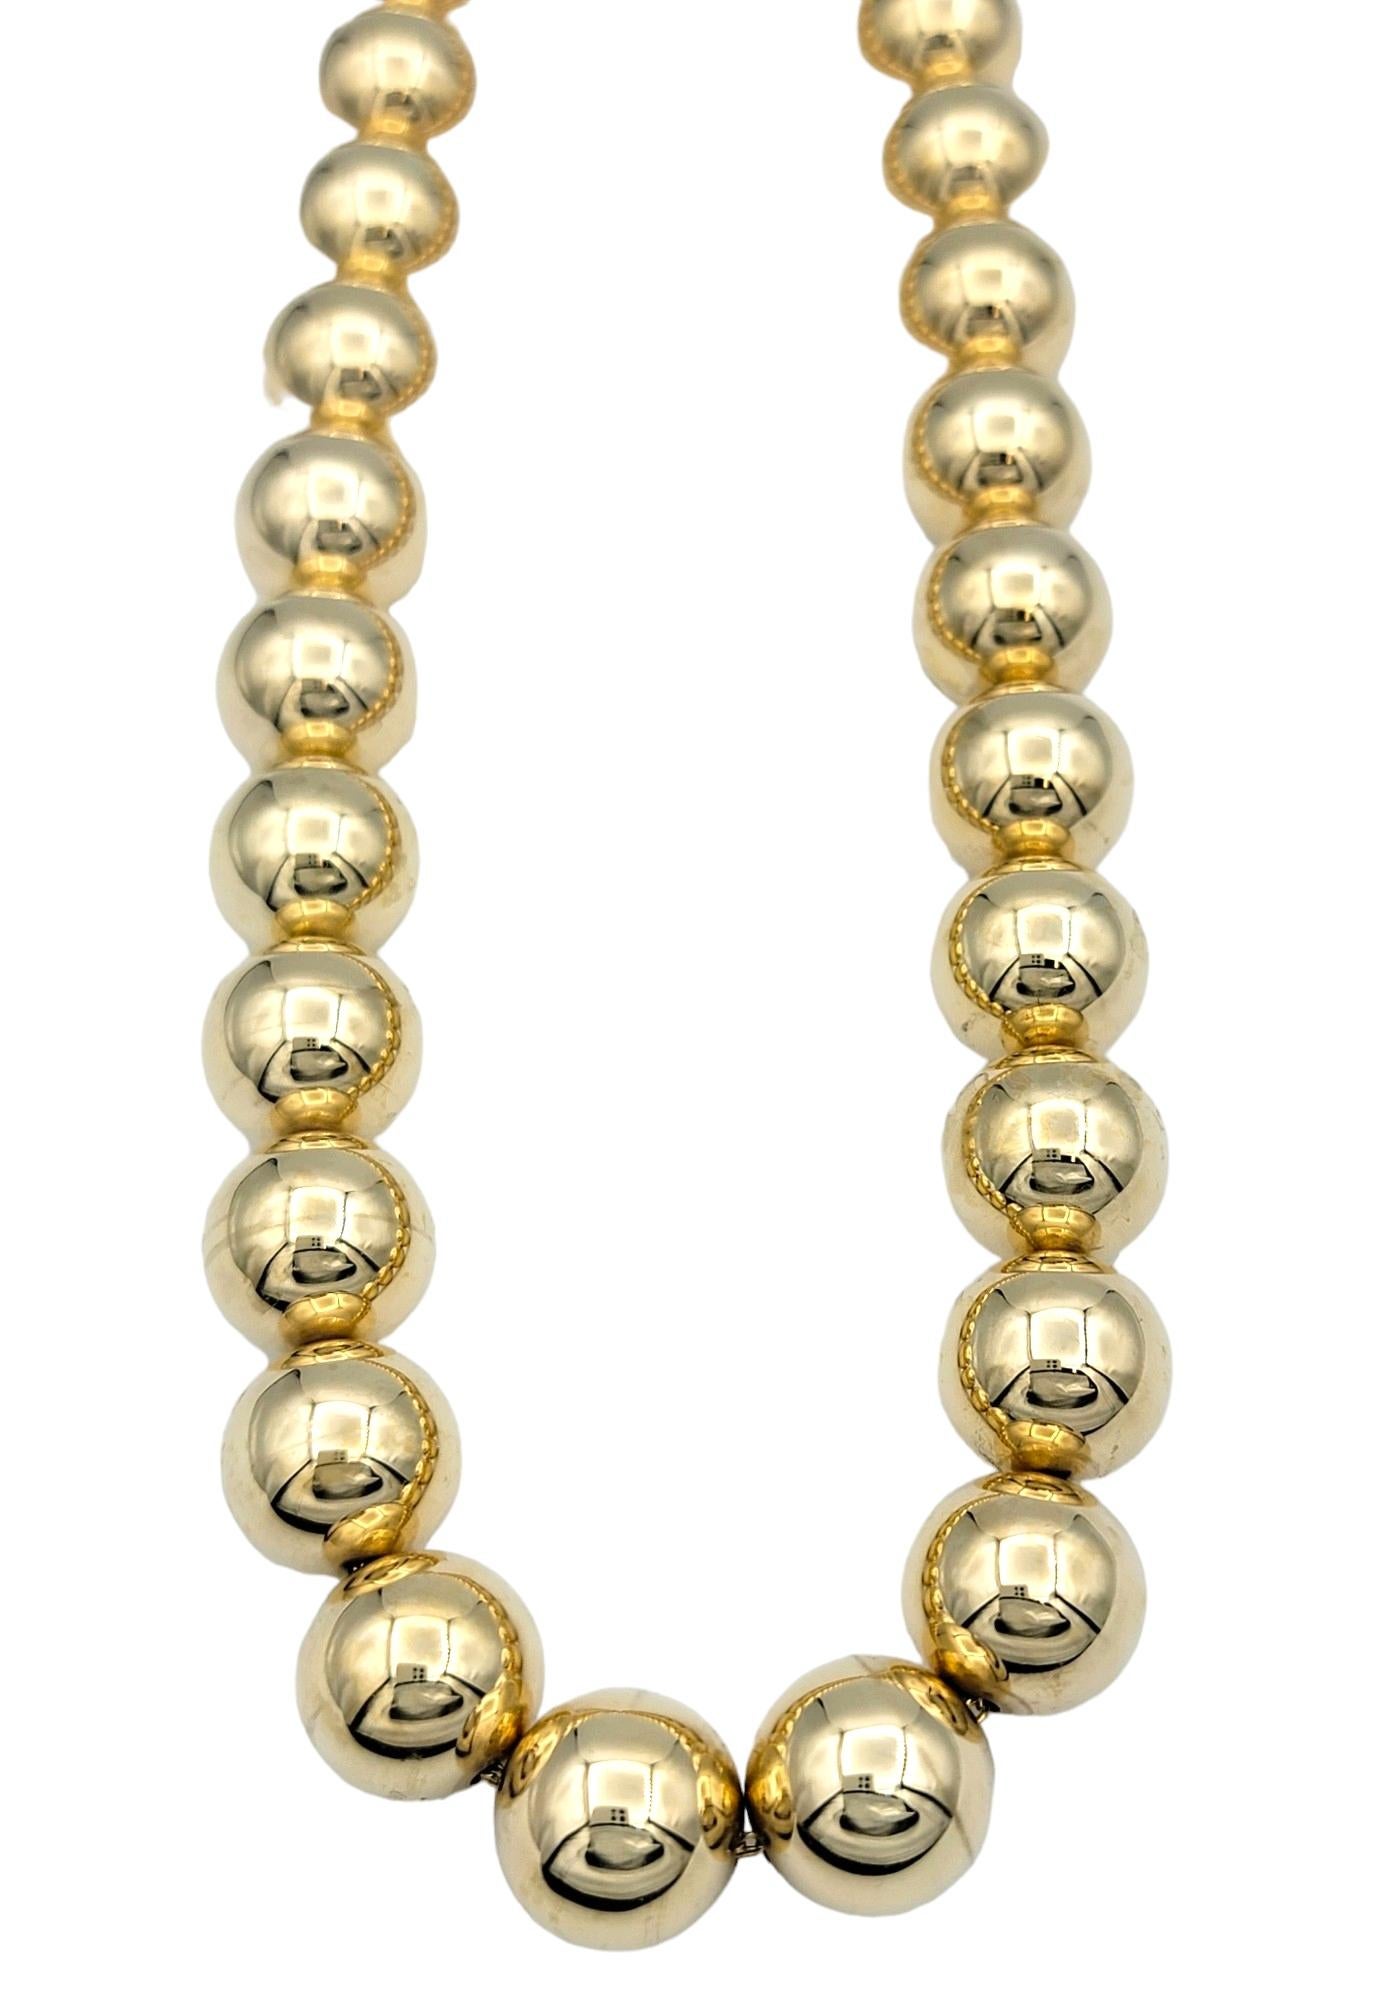 Ce magnifique collier en or 14 carats présente un design époustouflant composé de grosses perles sphériques en or poli. Les perles sphériques, méticuleusement finies pour obtenir une brillance semblable à celle d'un miroir, créent un spectacle